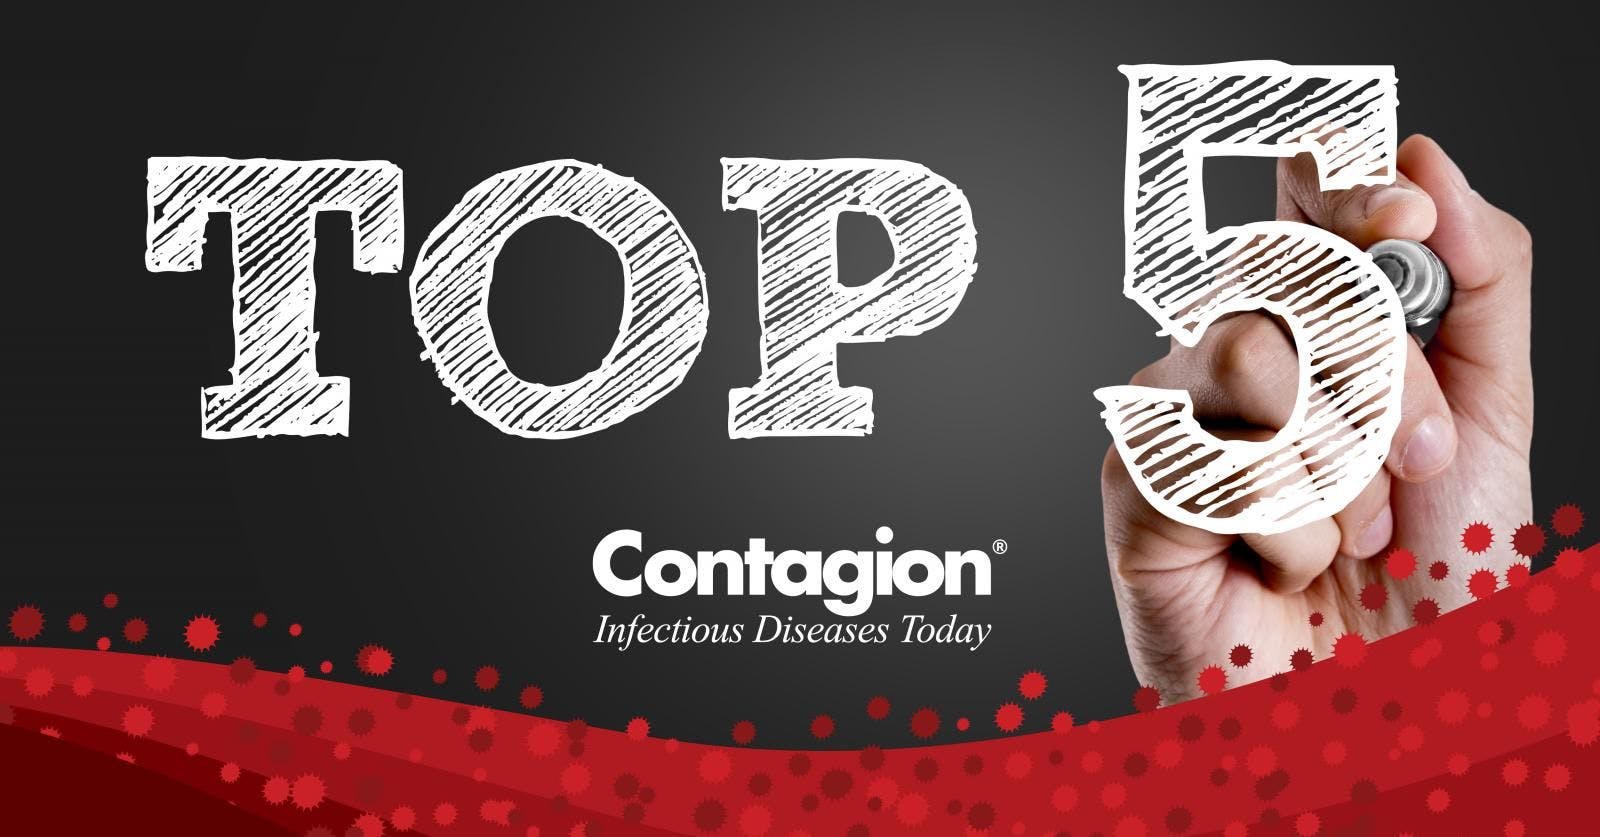 Top Infectious Disease News of the Week&mdash;Week of April 7, 2019